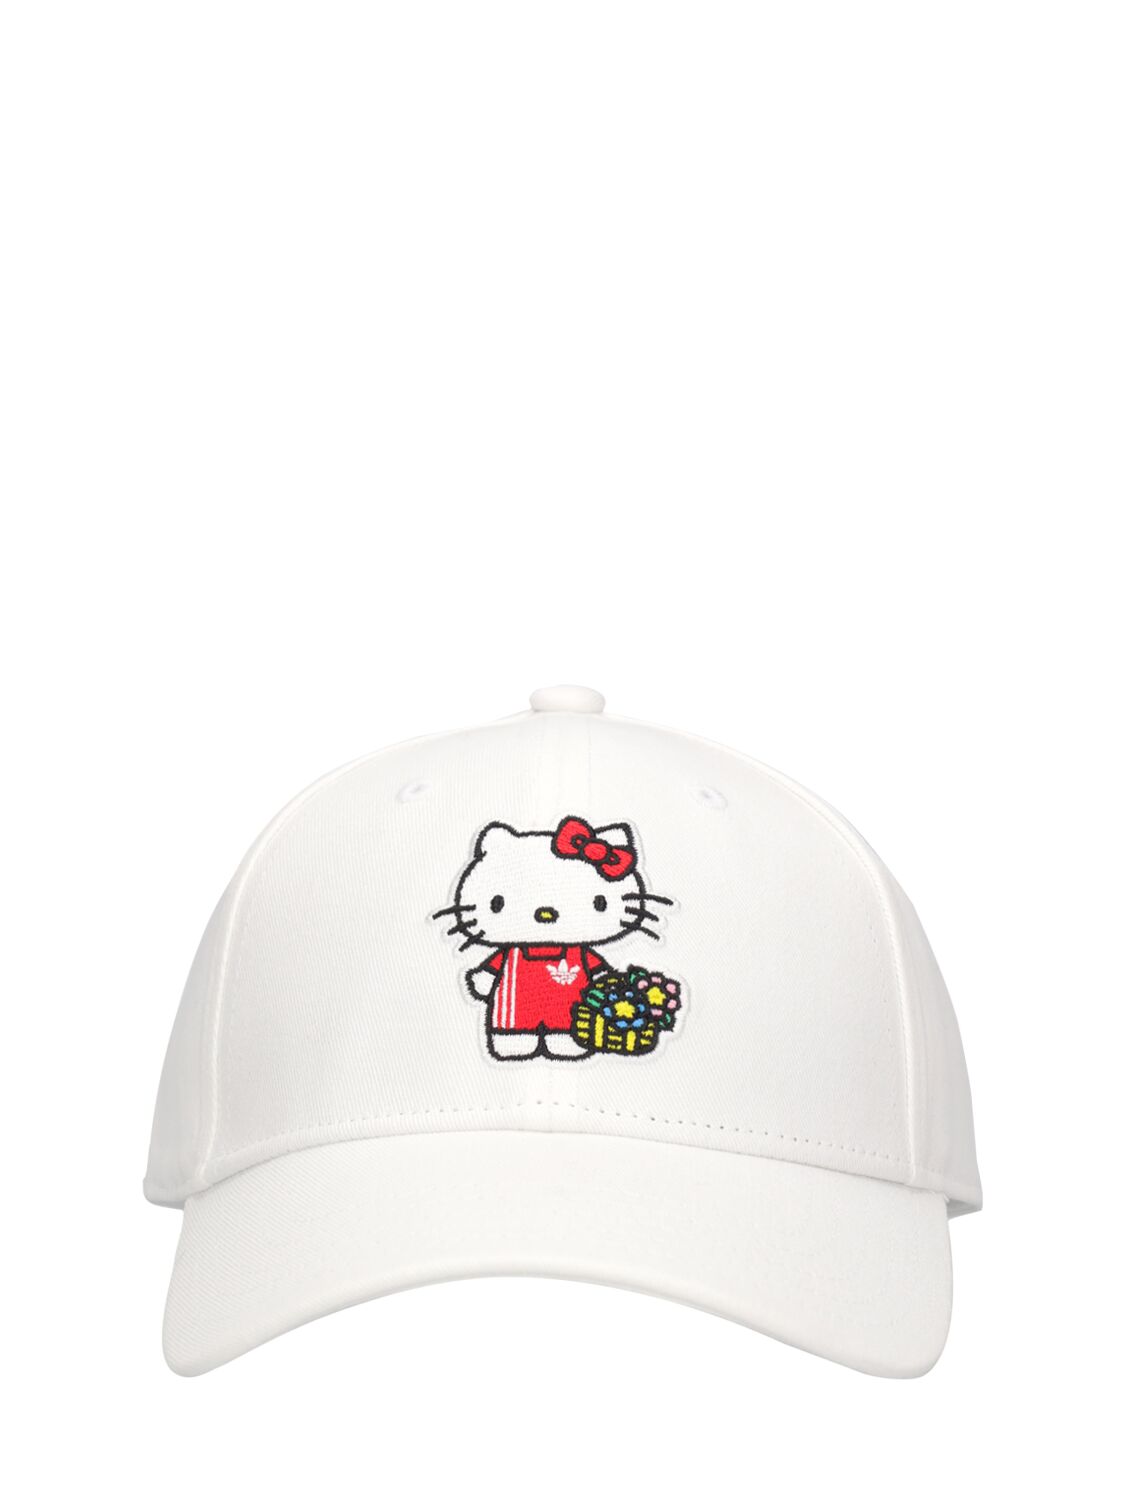 Adidas Originals Kids' Hello Kitty Cotton Gabardine Hat In White